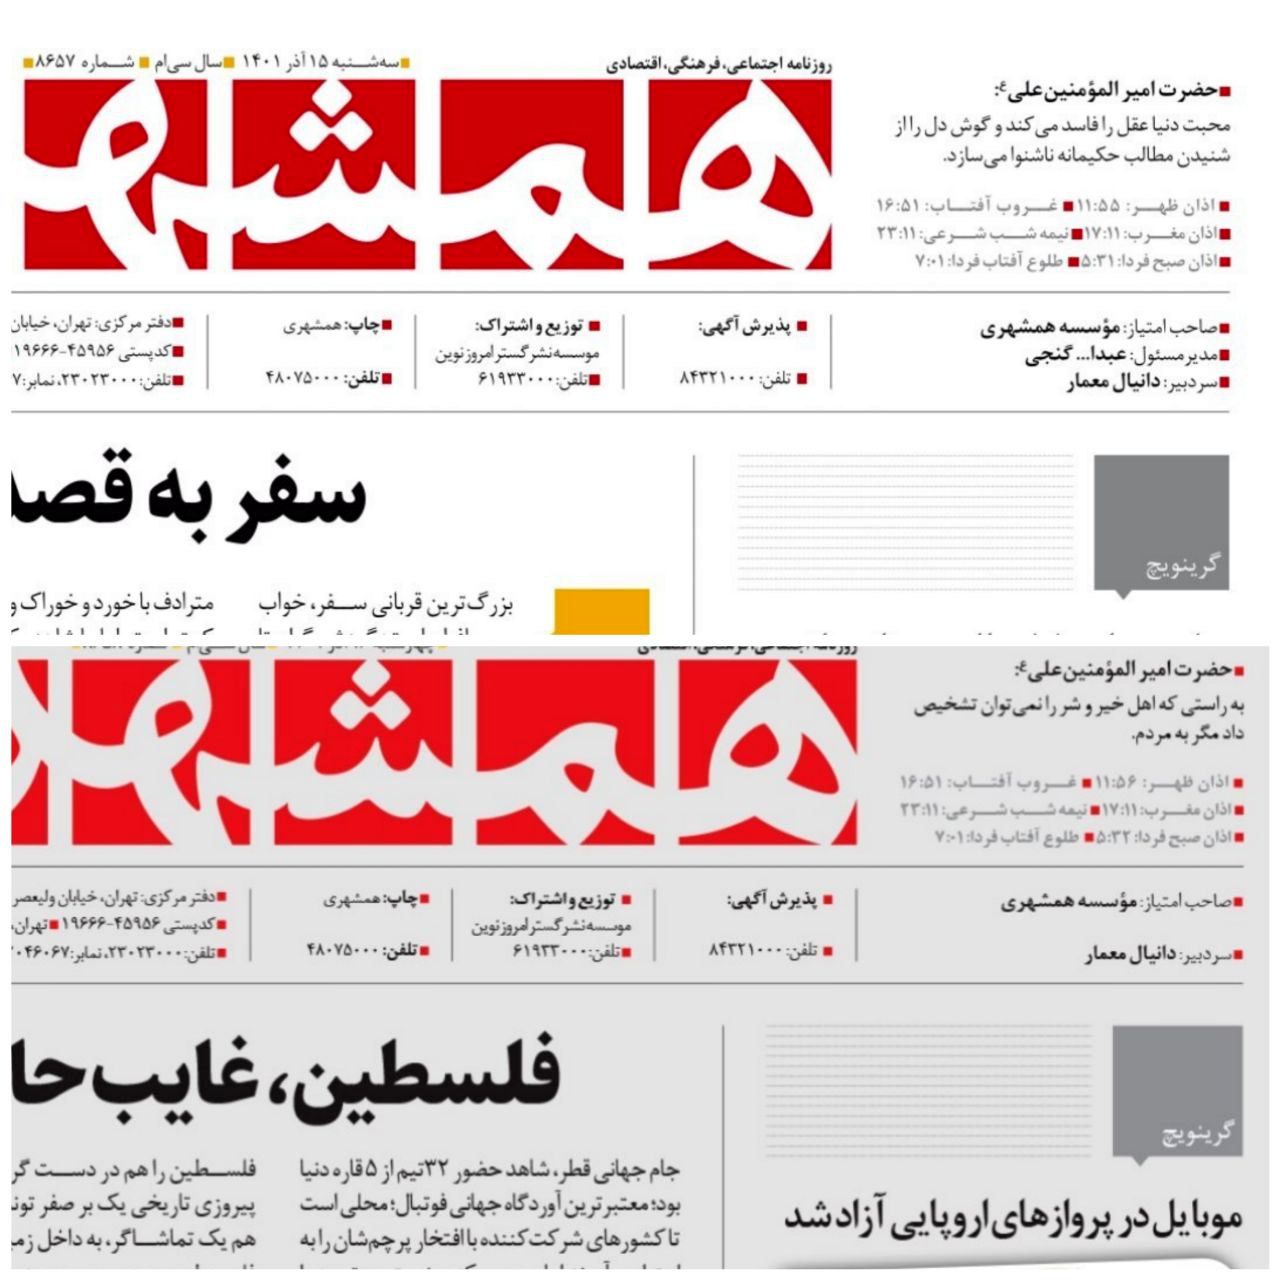 نام عبدالله گنجی از روزنامه همشهری حذف شد